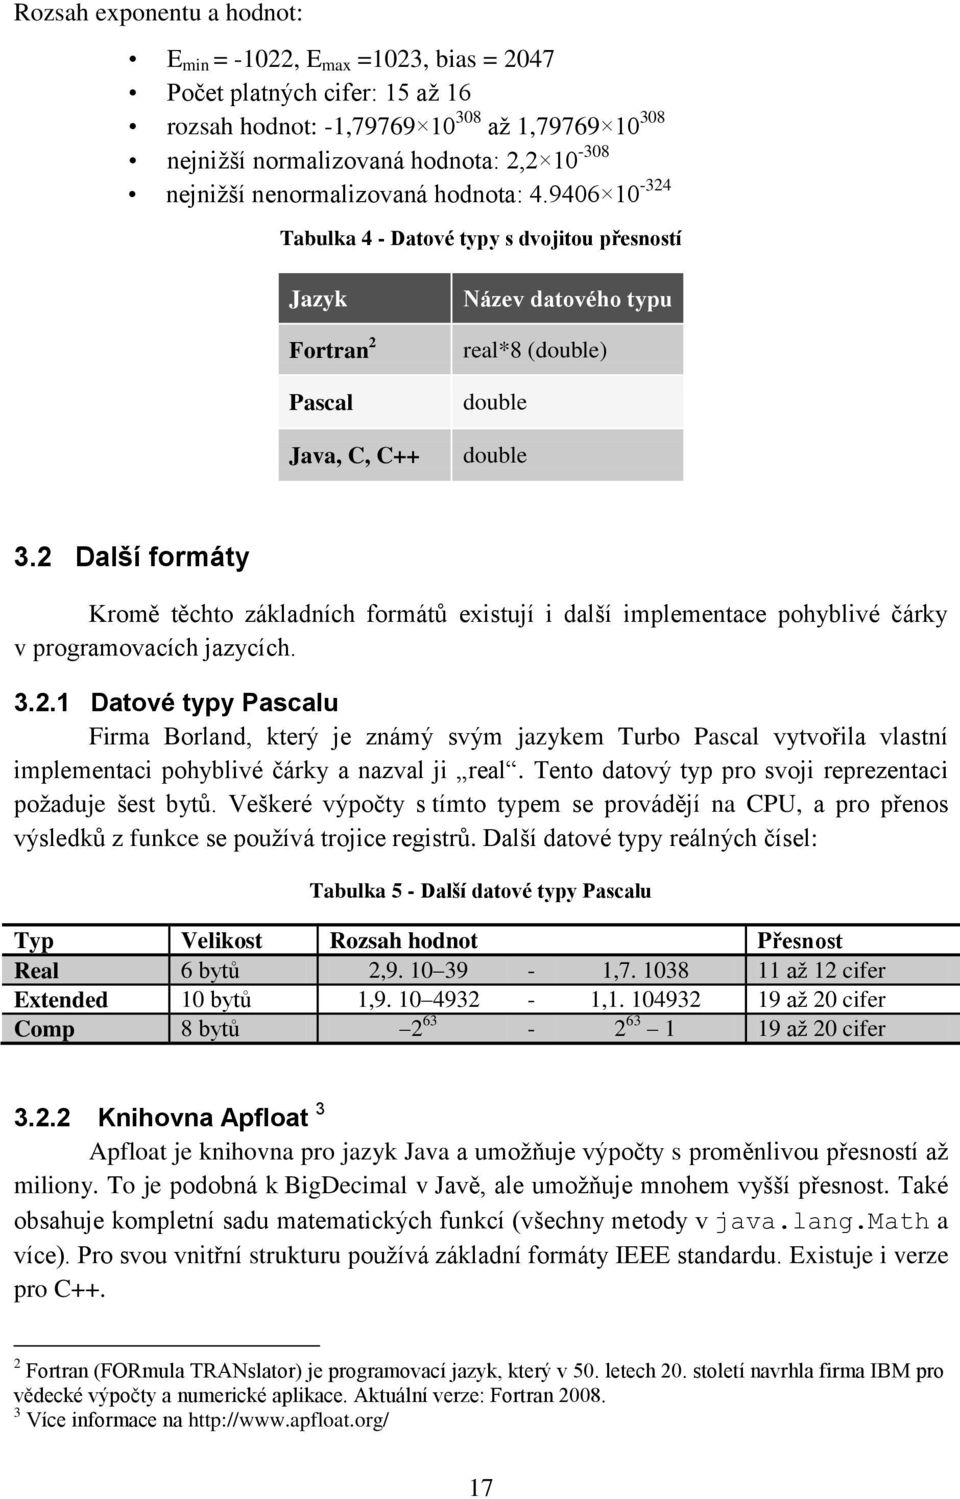 2 Další formáty Kromě těchto základních formátů existují i další implementace pohyblivé čárky v programovacích jazycích. 3.2.1 Datové typy Pascalu Firma Borland, který je známý svým jazykem Turbo Pascal vytvořila vlastní implementaci pohyblivé čárky a nazval ji real.